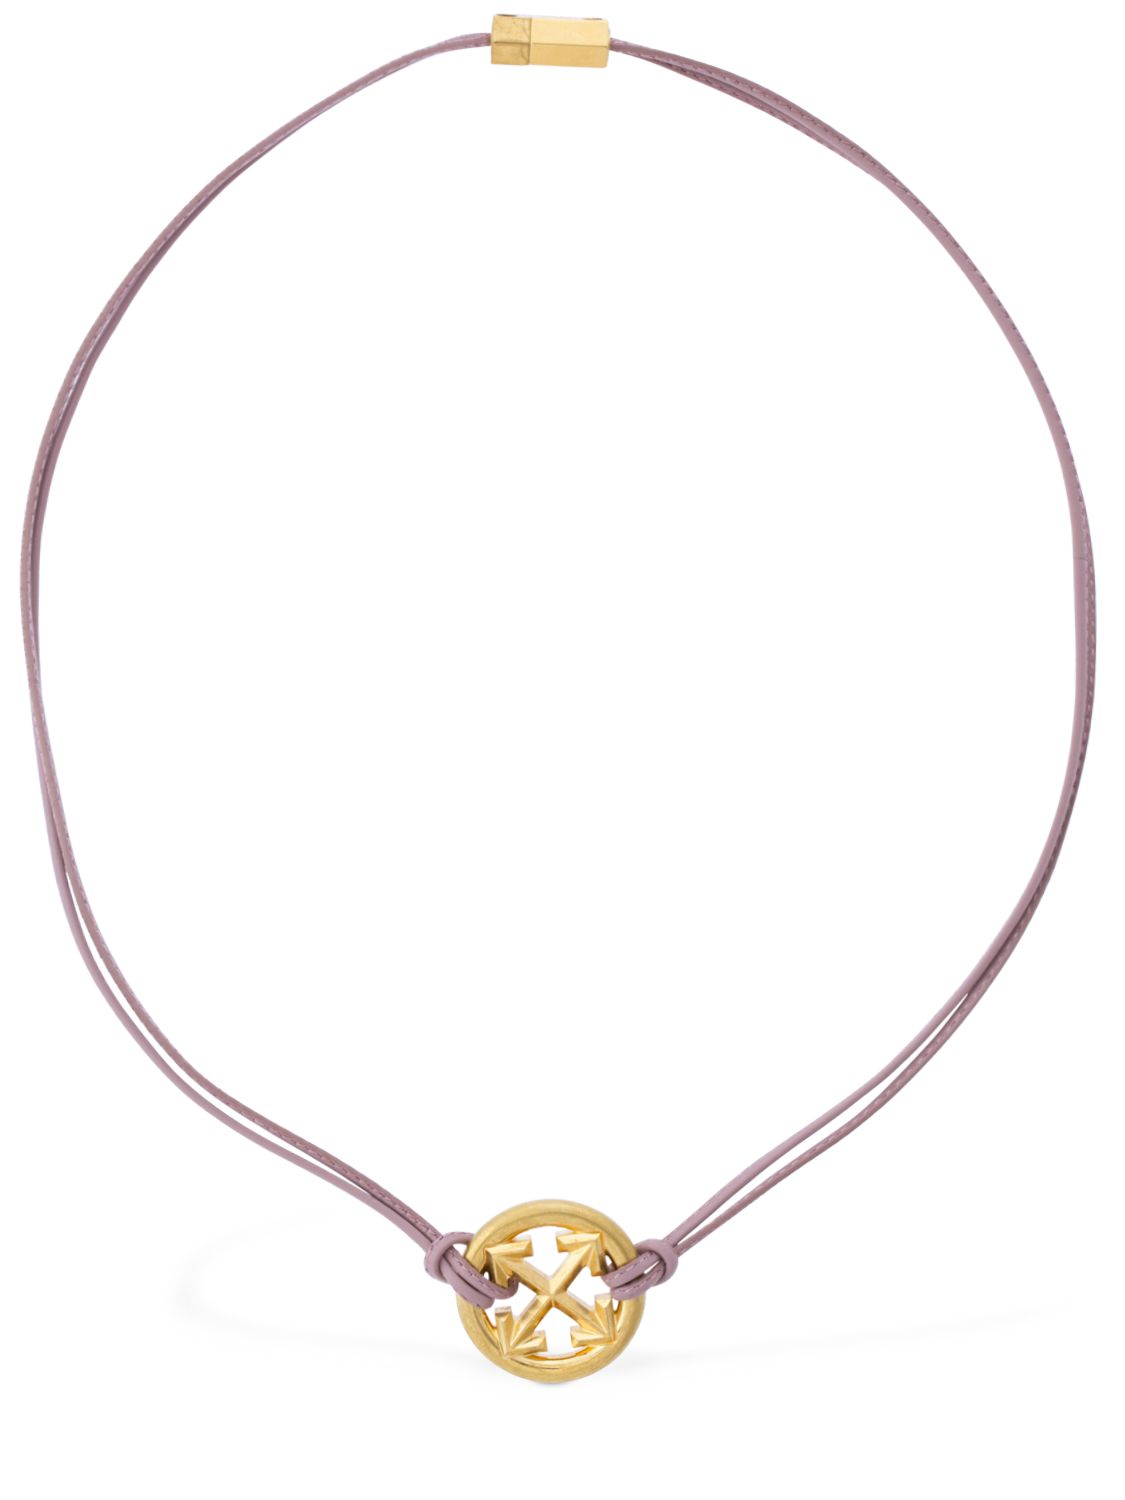 Arrow Leather Necklace